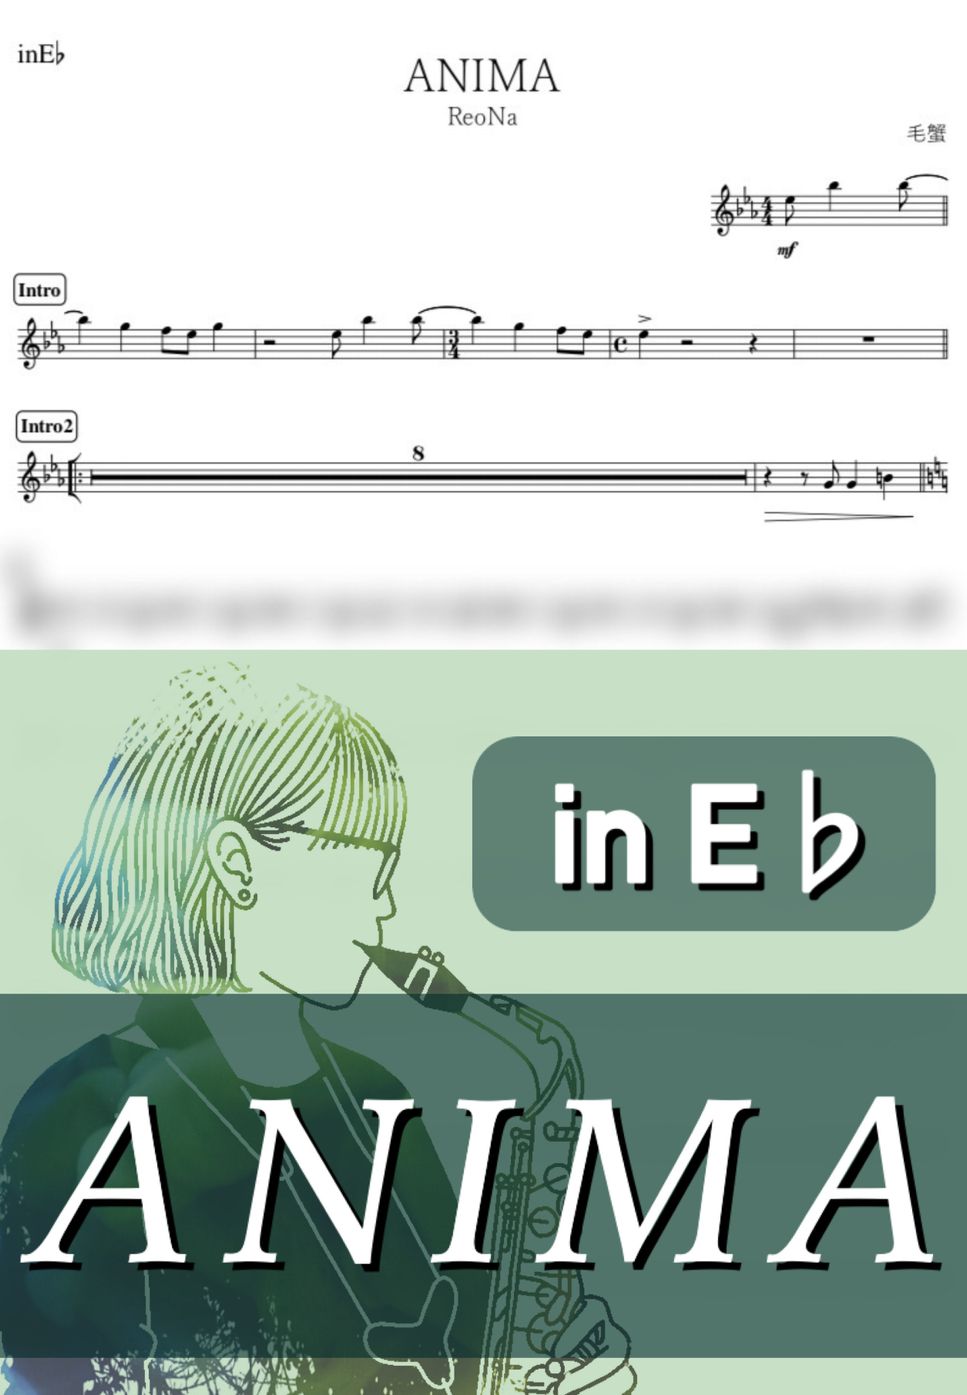 ReoNa - ANIMA (E♭) by kanamusic